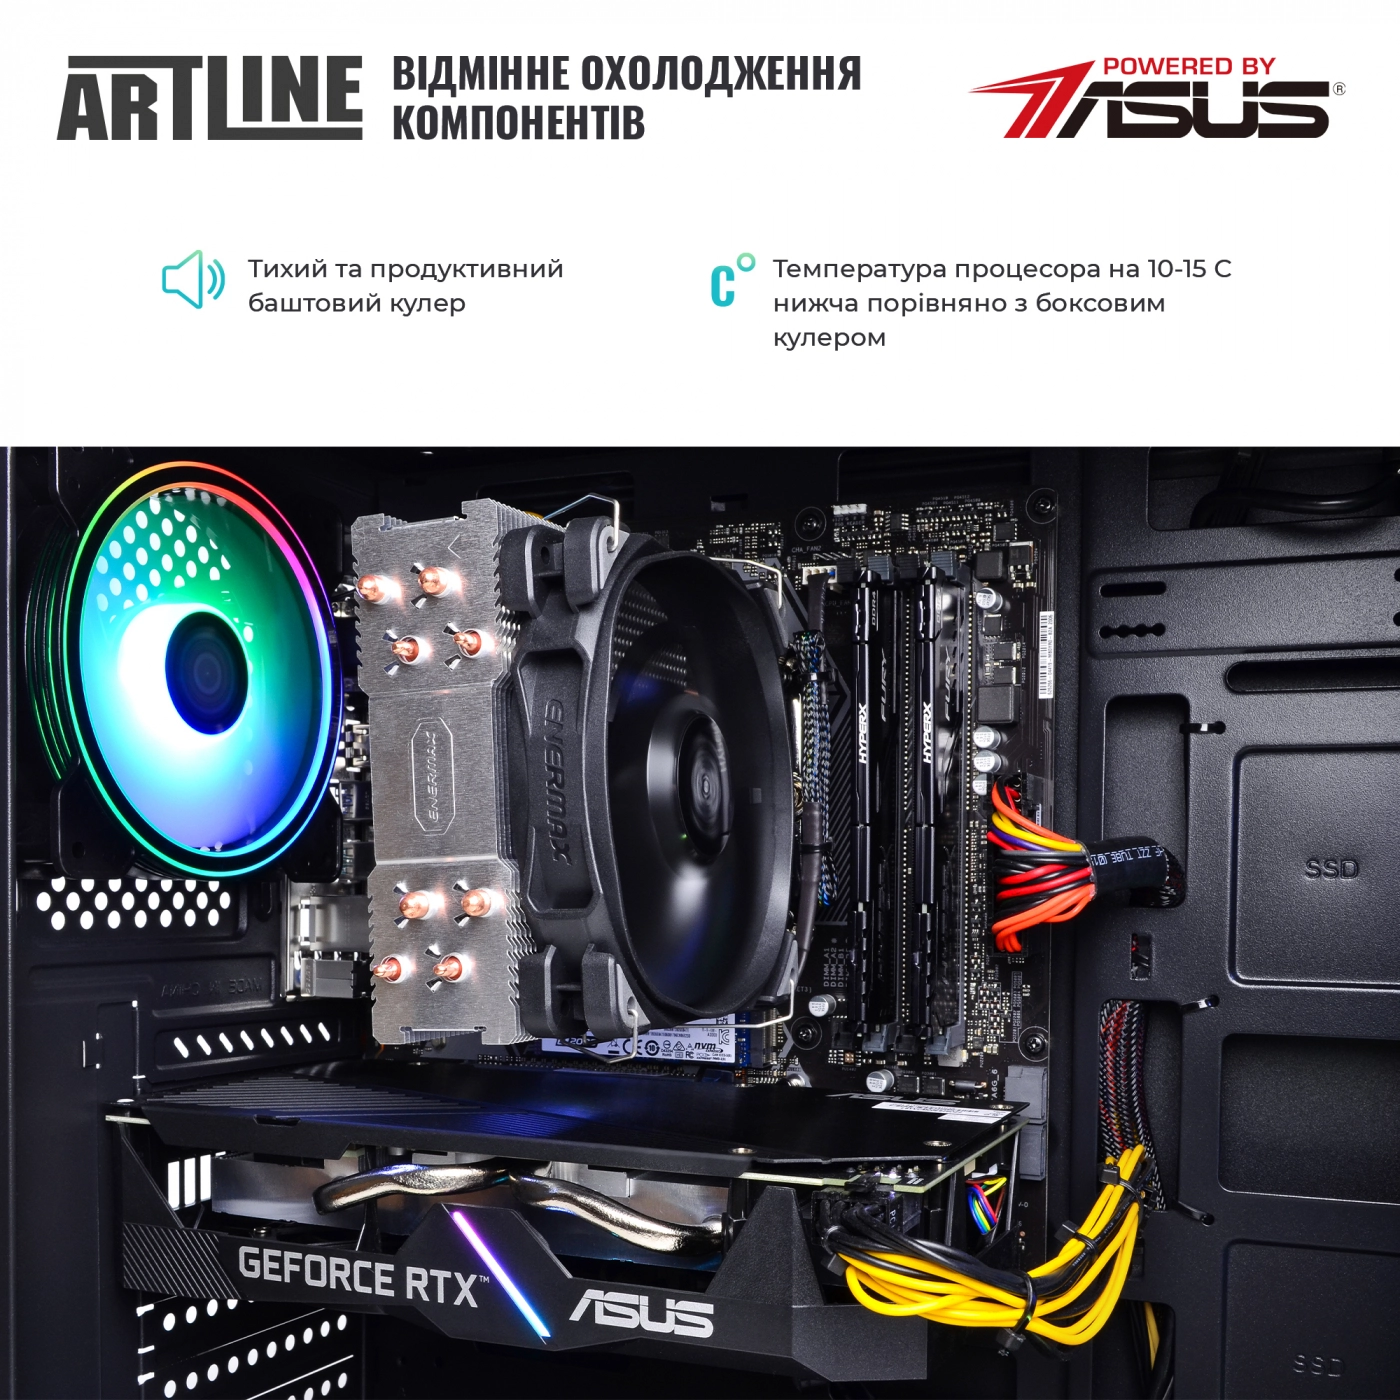 Купить Компьютер ARTLINE Gaming X55v42 - фото 6